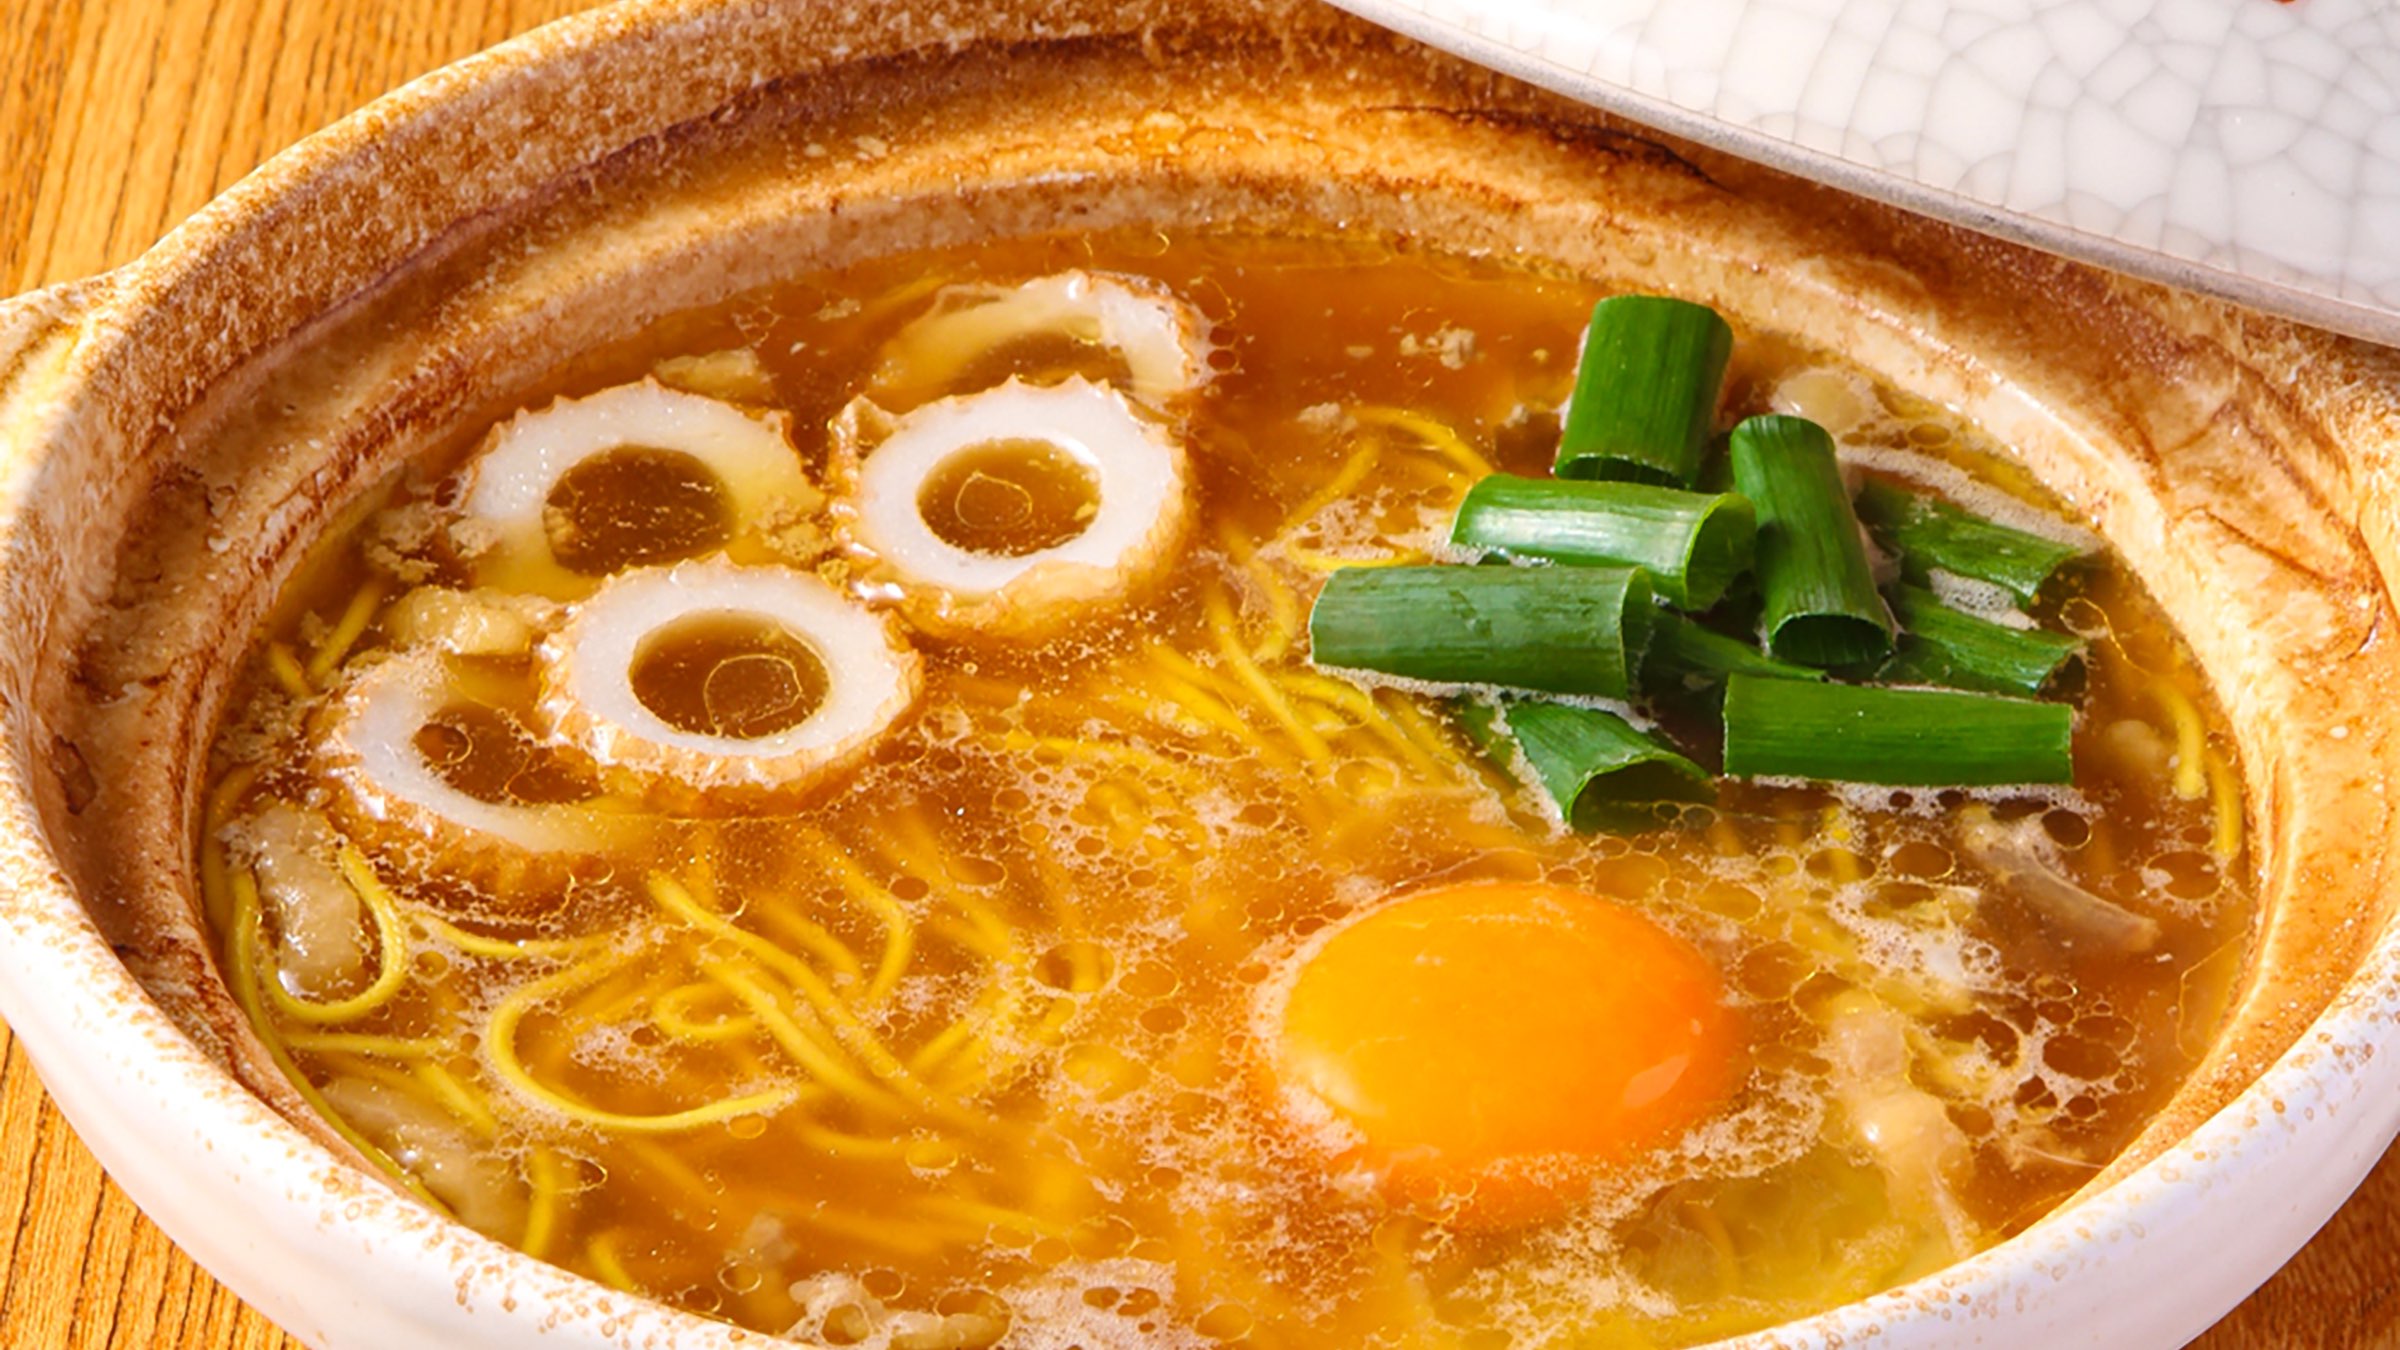 アツアツ土鍋で味わう須崎のソウルフード「須崎名物鍋焼きラーメン」